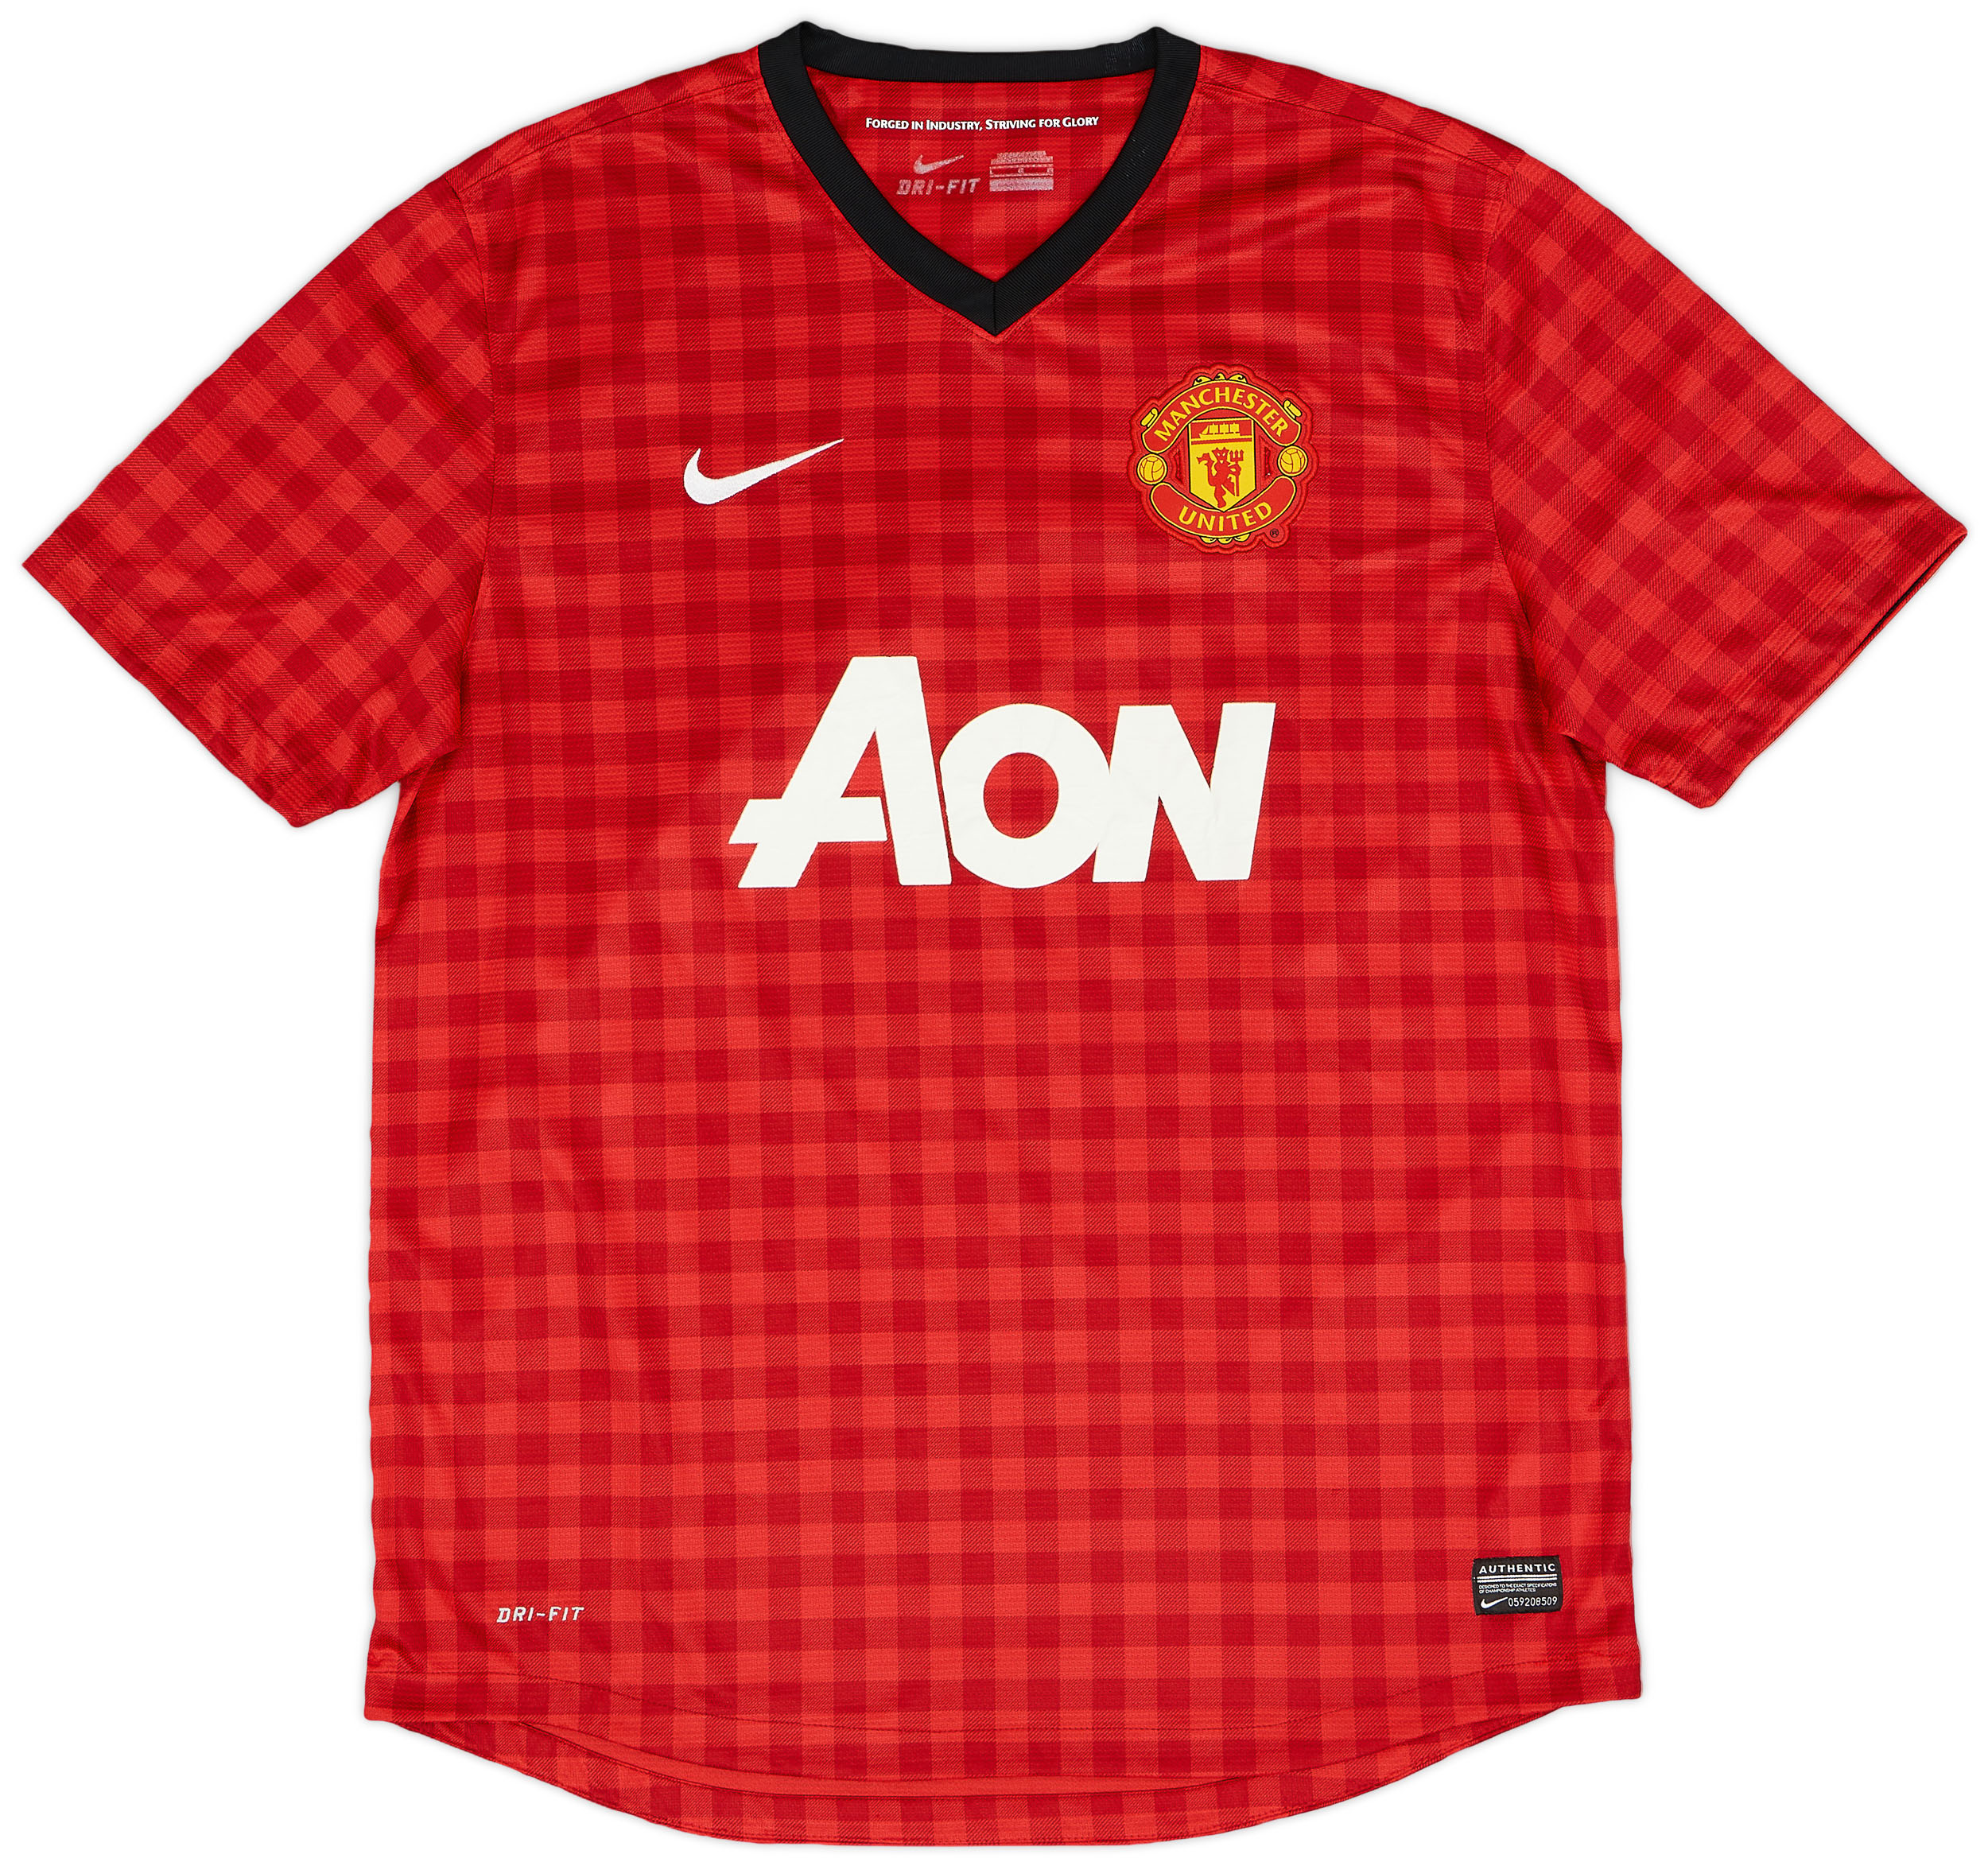 2012-13 Manchester United Home Shirt - Fair 4/10 - ()